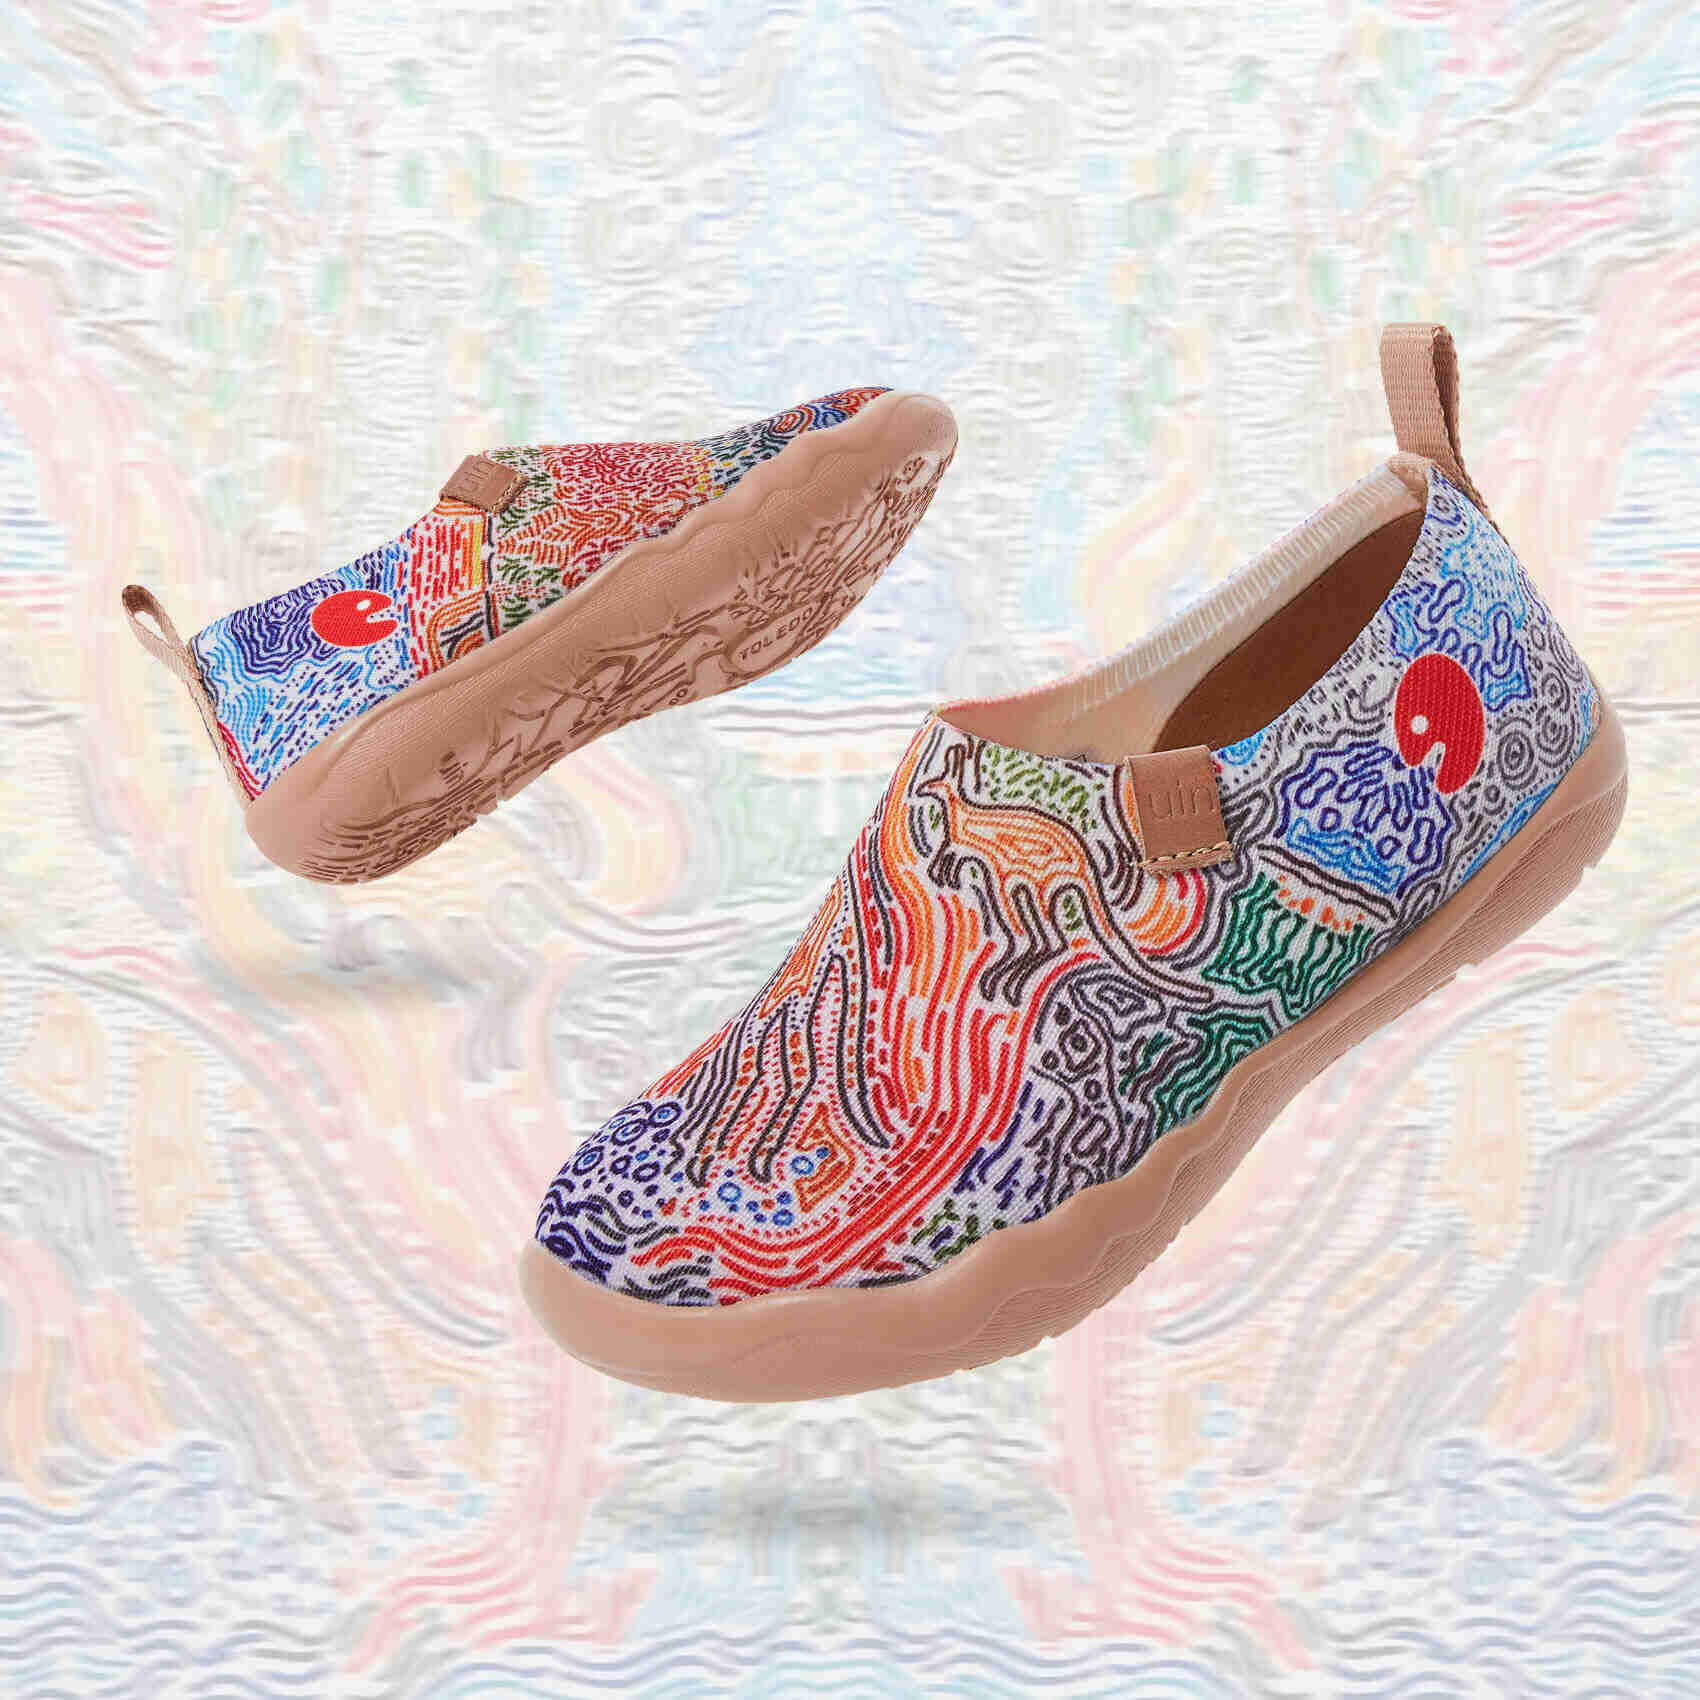 UIN Footwear Women (Pre-sale) Kangaroo Canvas loafers